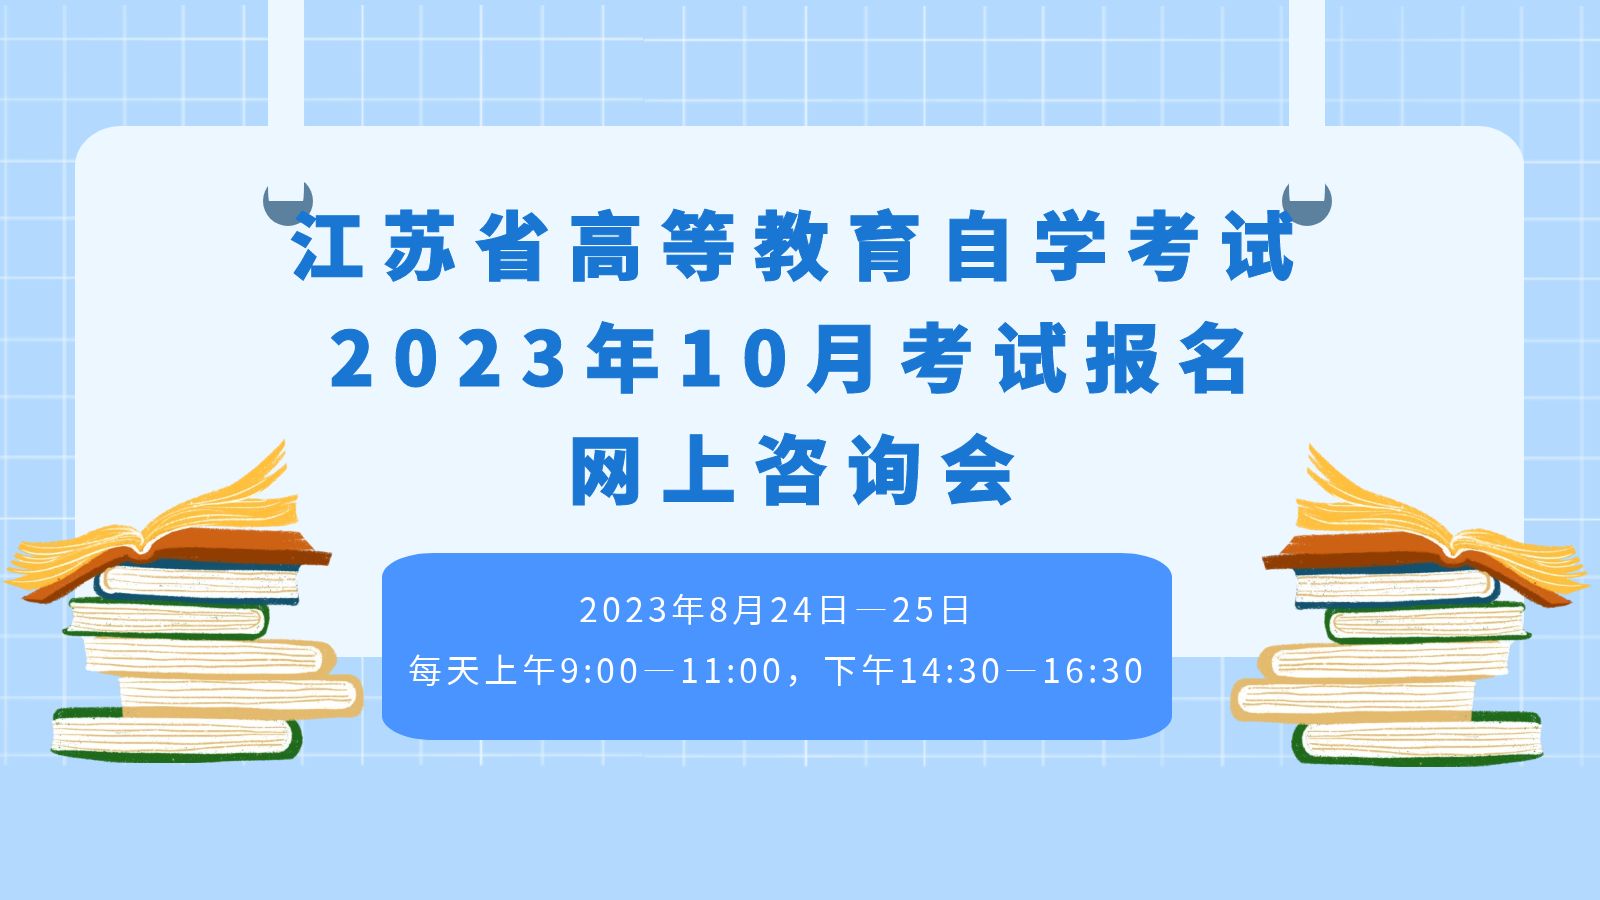 江苏省高等教育自学考试2023年10月考试报名网上咨询会